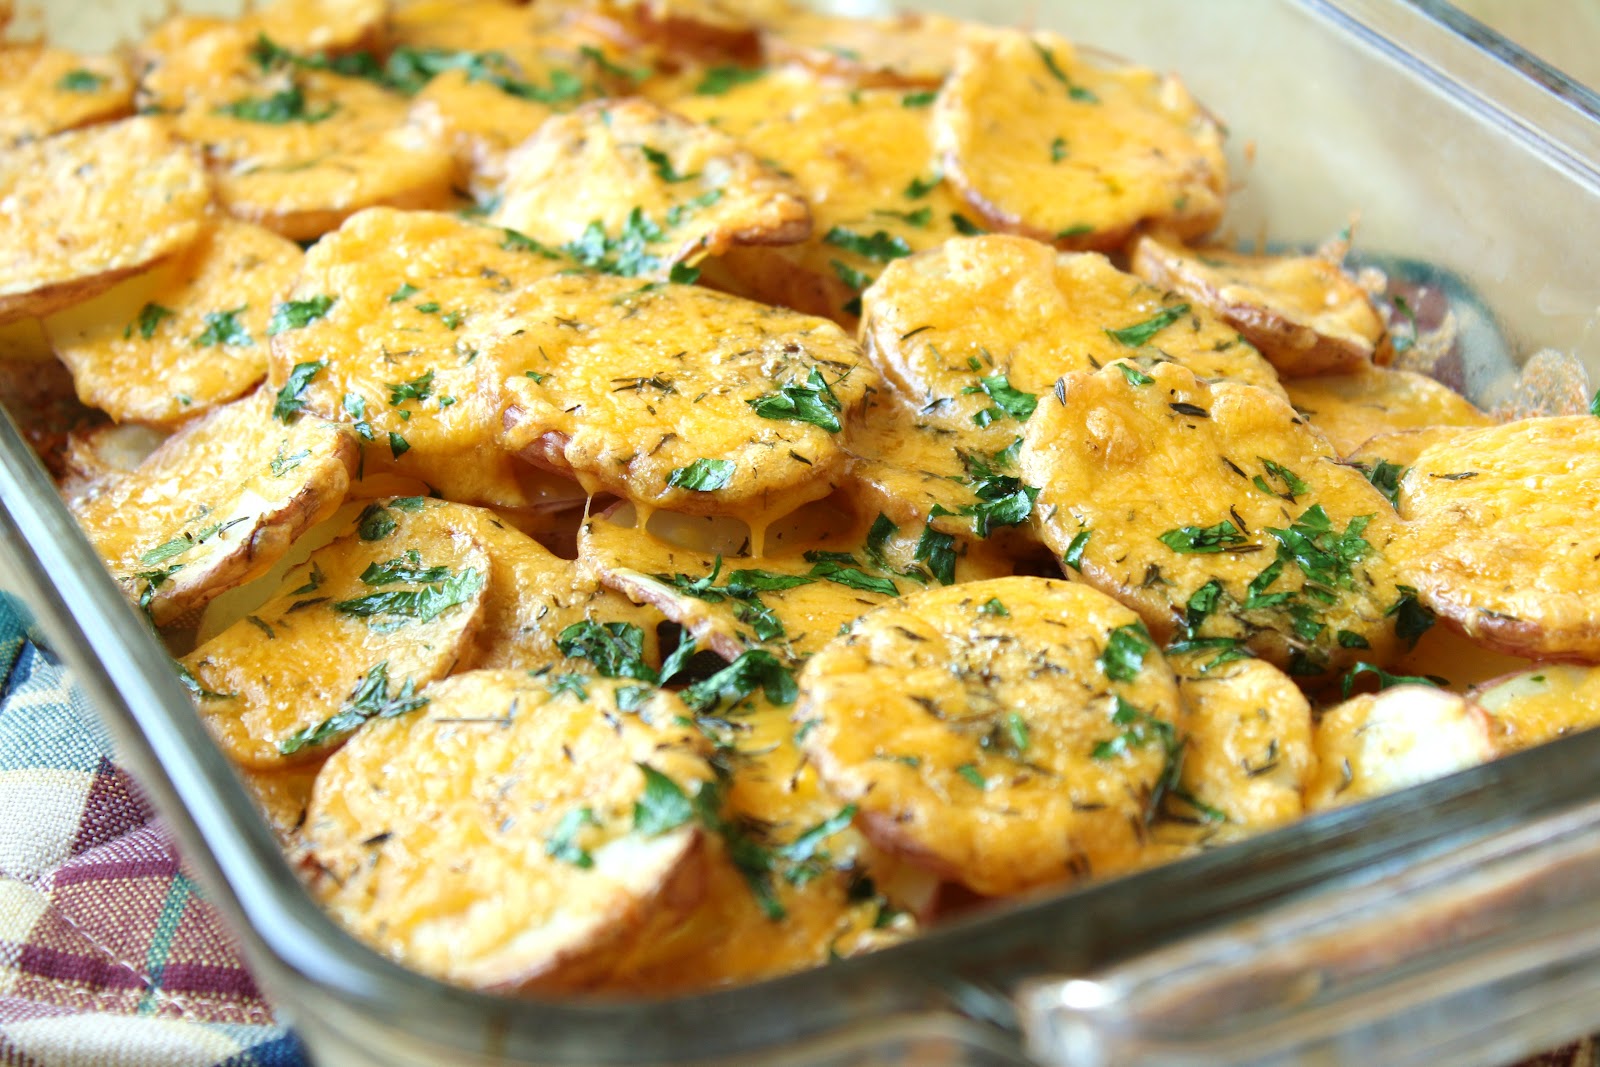 Картошка по-деревенски в духовке – вкусные рецепты ароматного и румяного картофеля